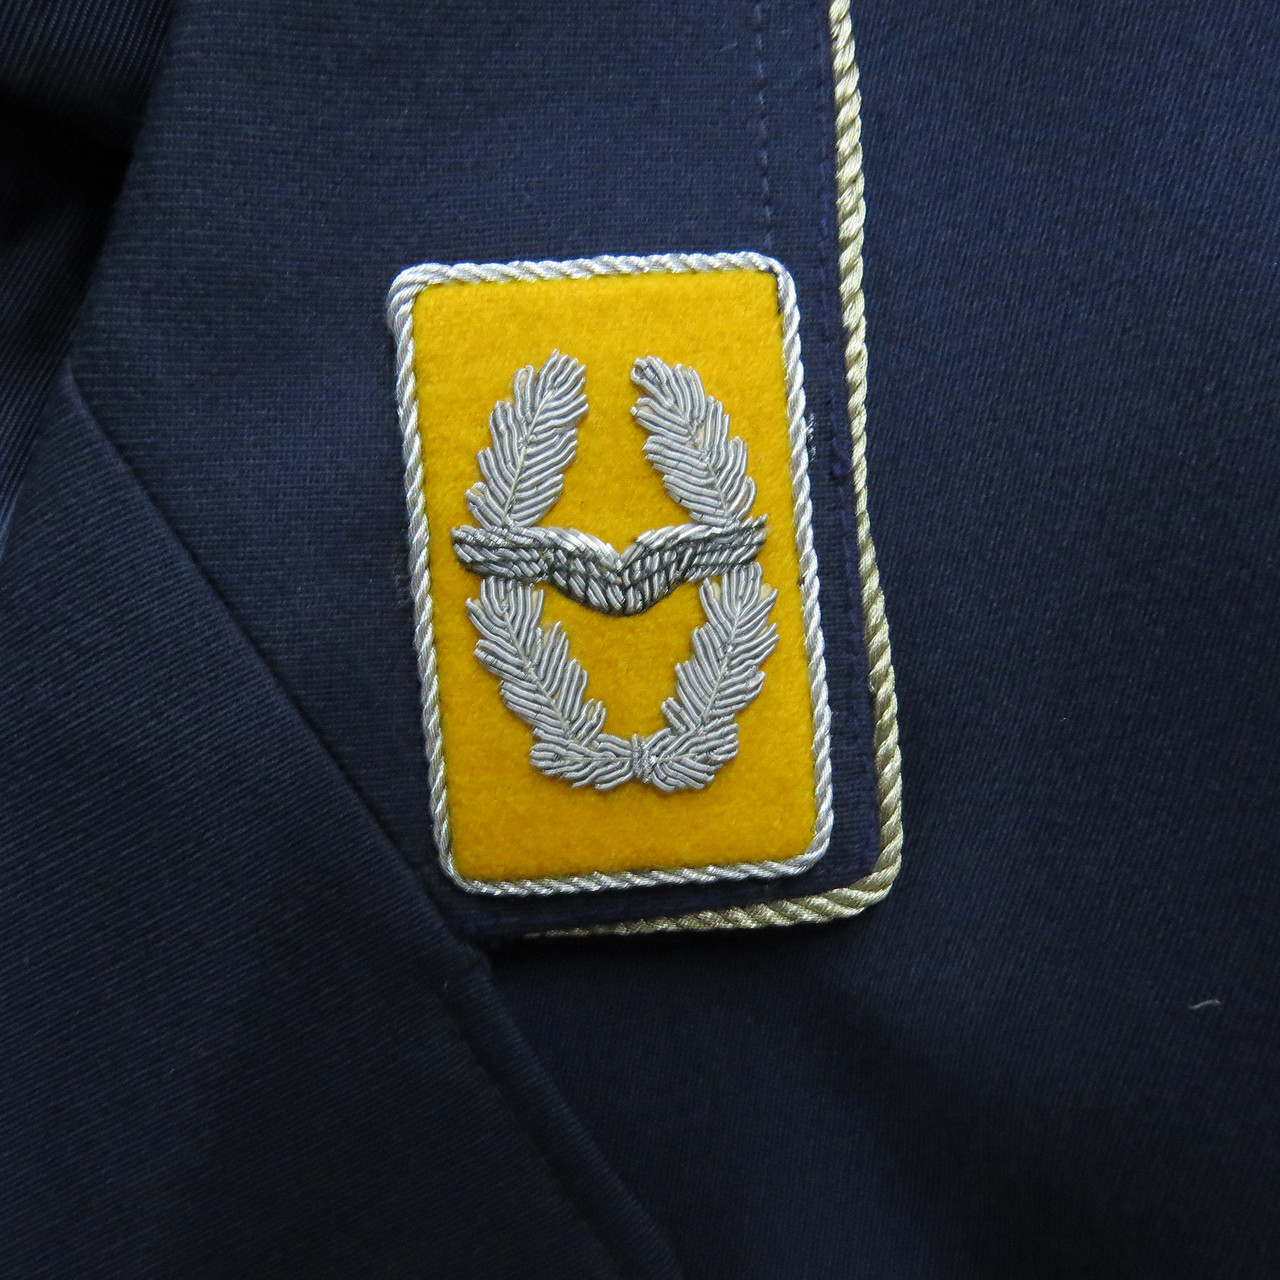 Bw Luftwaffe Sr. NCO Blue Uniform Jacket: L-Regular